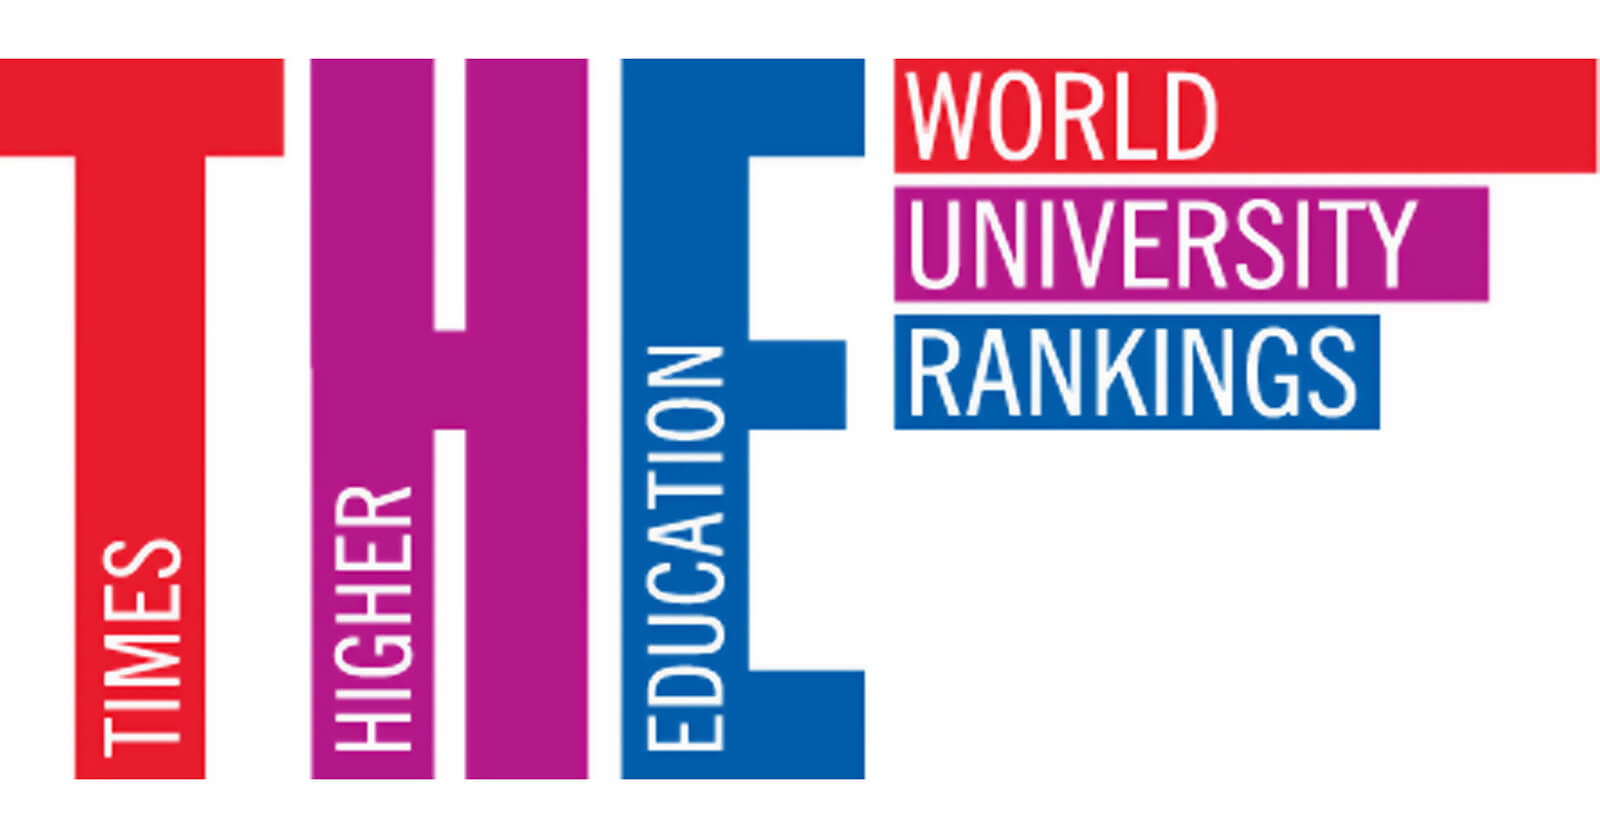 Confira as melhores universidades do mundo pela Times Higher Education